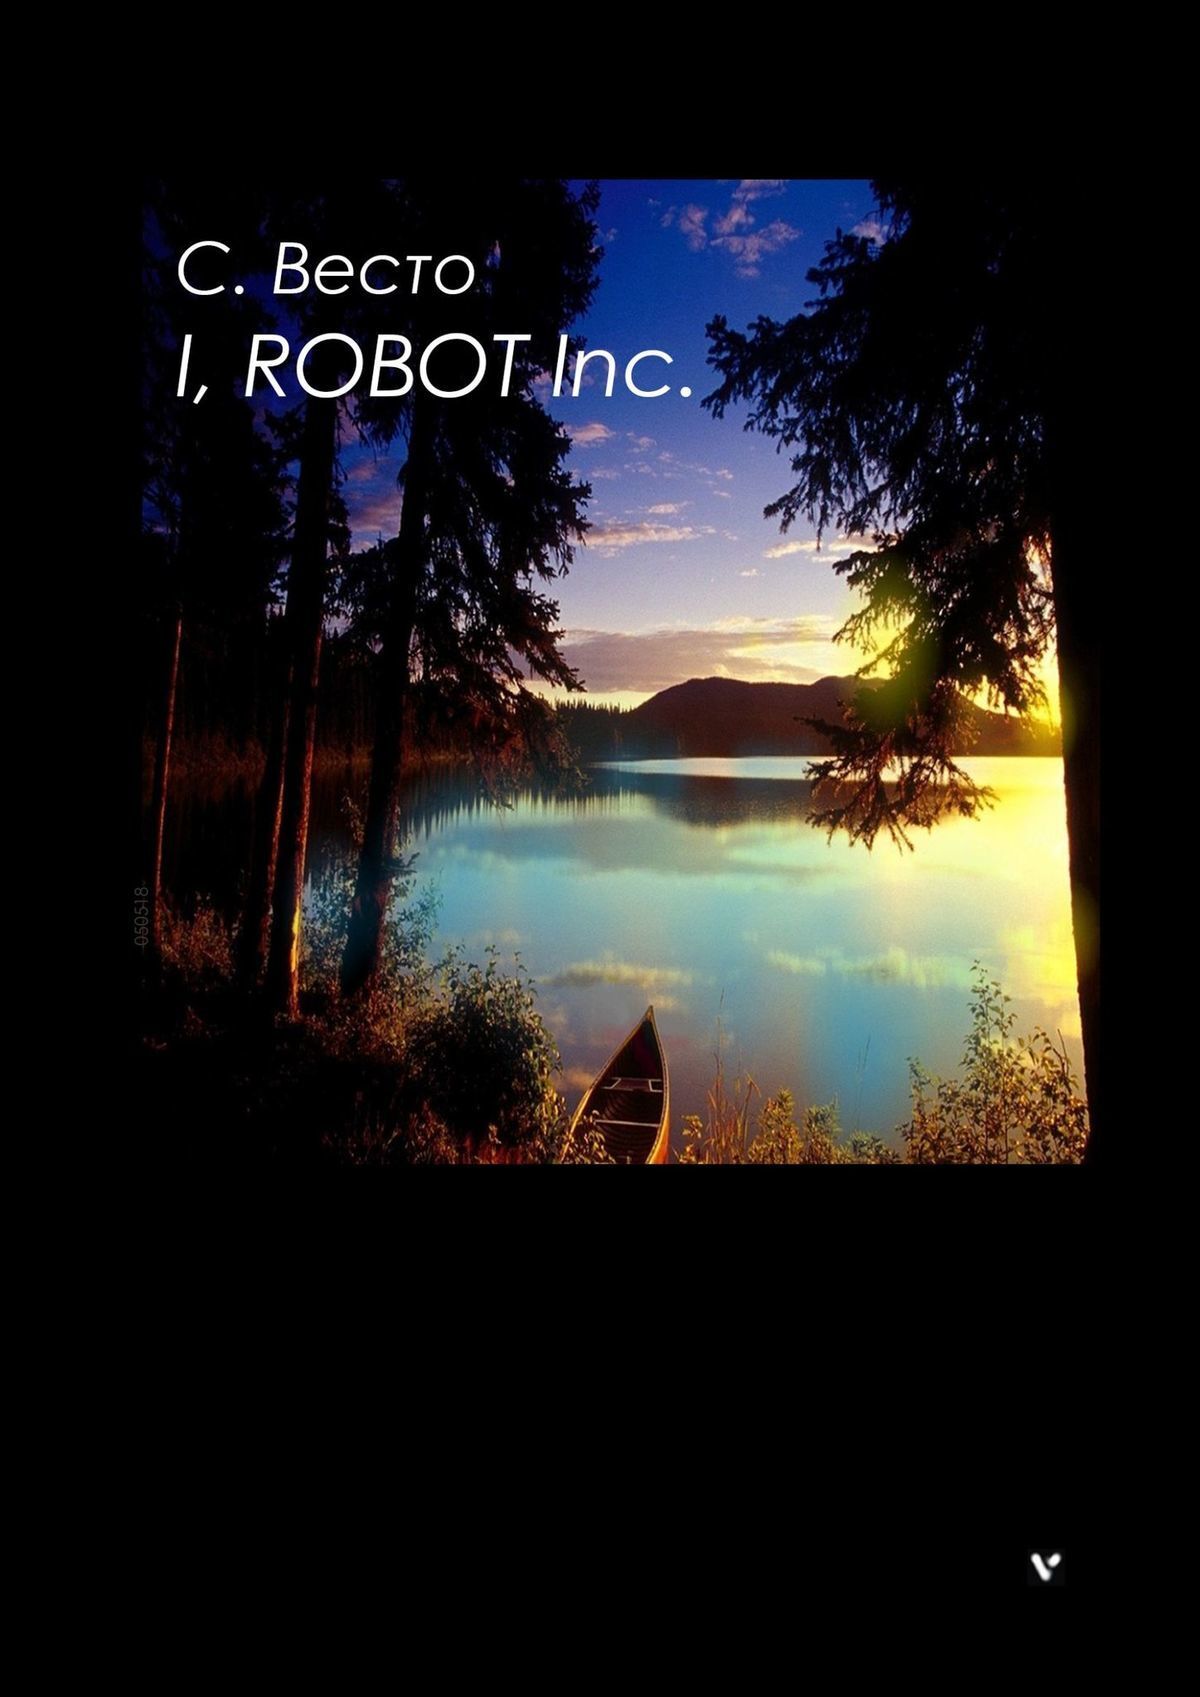 Книга I, ROBOT Inc. из серии , созданная Сен Сейно Весто, написана в жанре Драматургия, Мифы. Легенды. Эпос, Триллеры, Научная фантастика. Стоимость электронной книги I, ROBOT Inc. с идентификатором 22972113 составляет 40.00 руб.